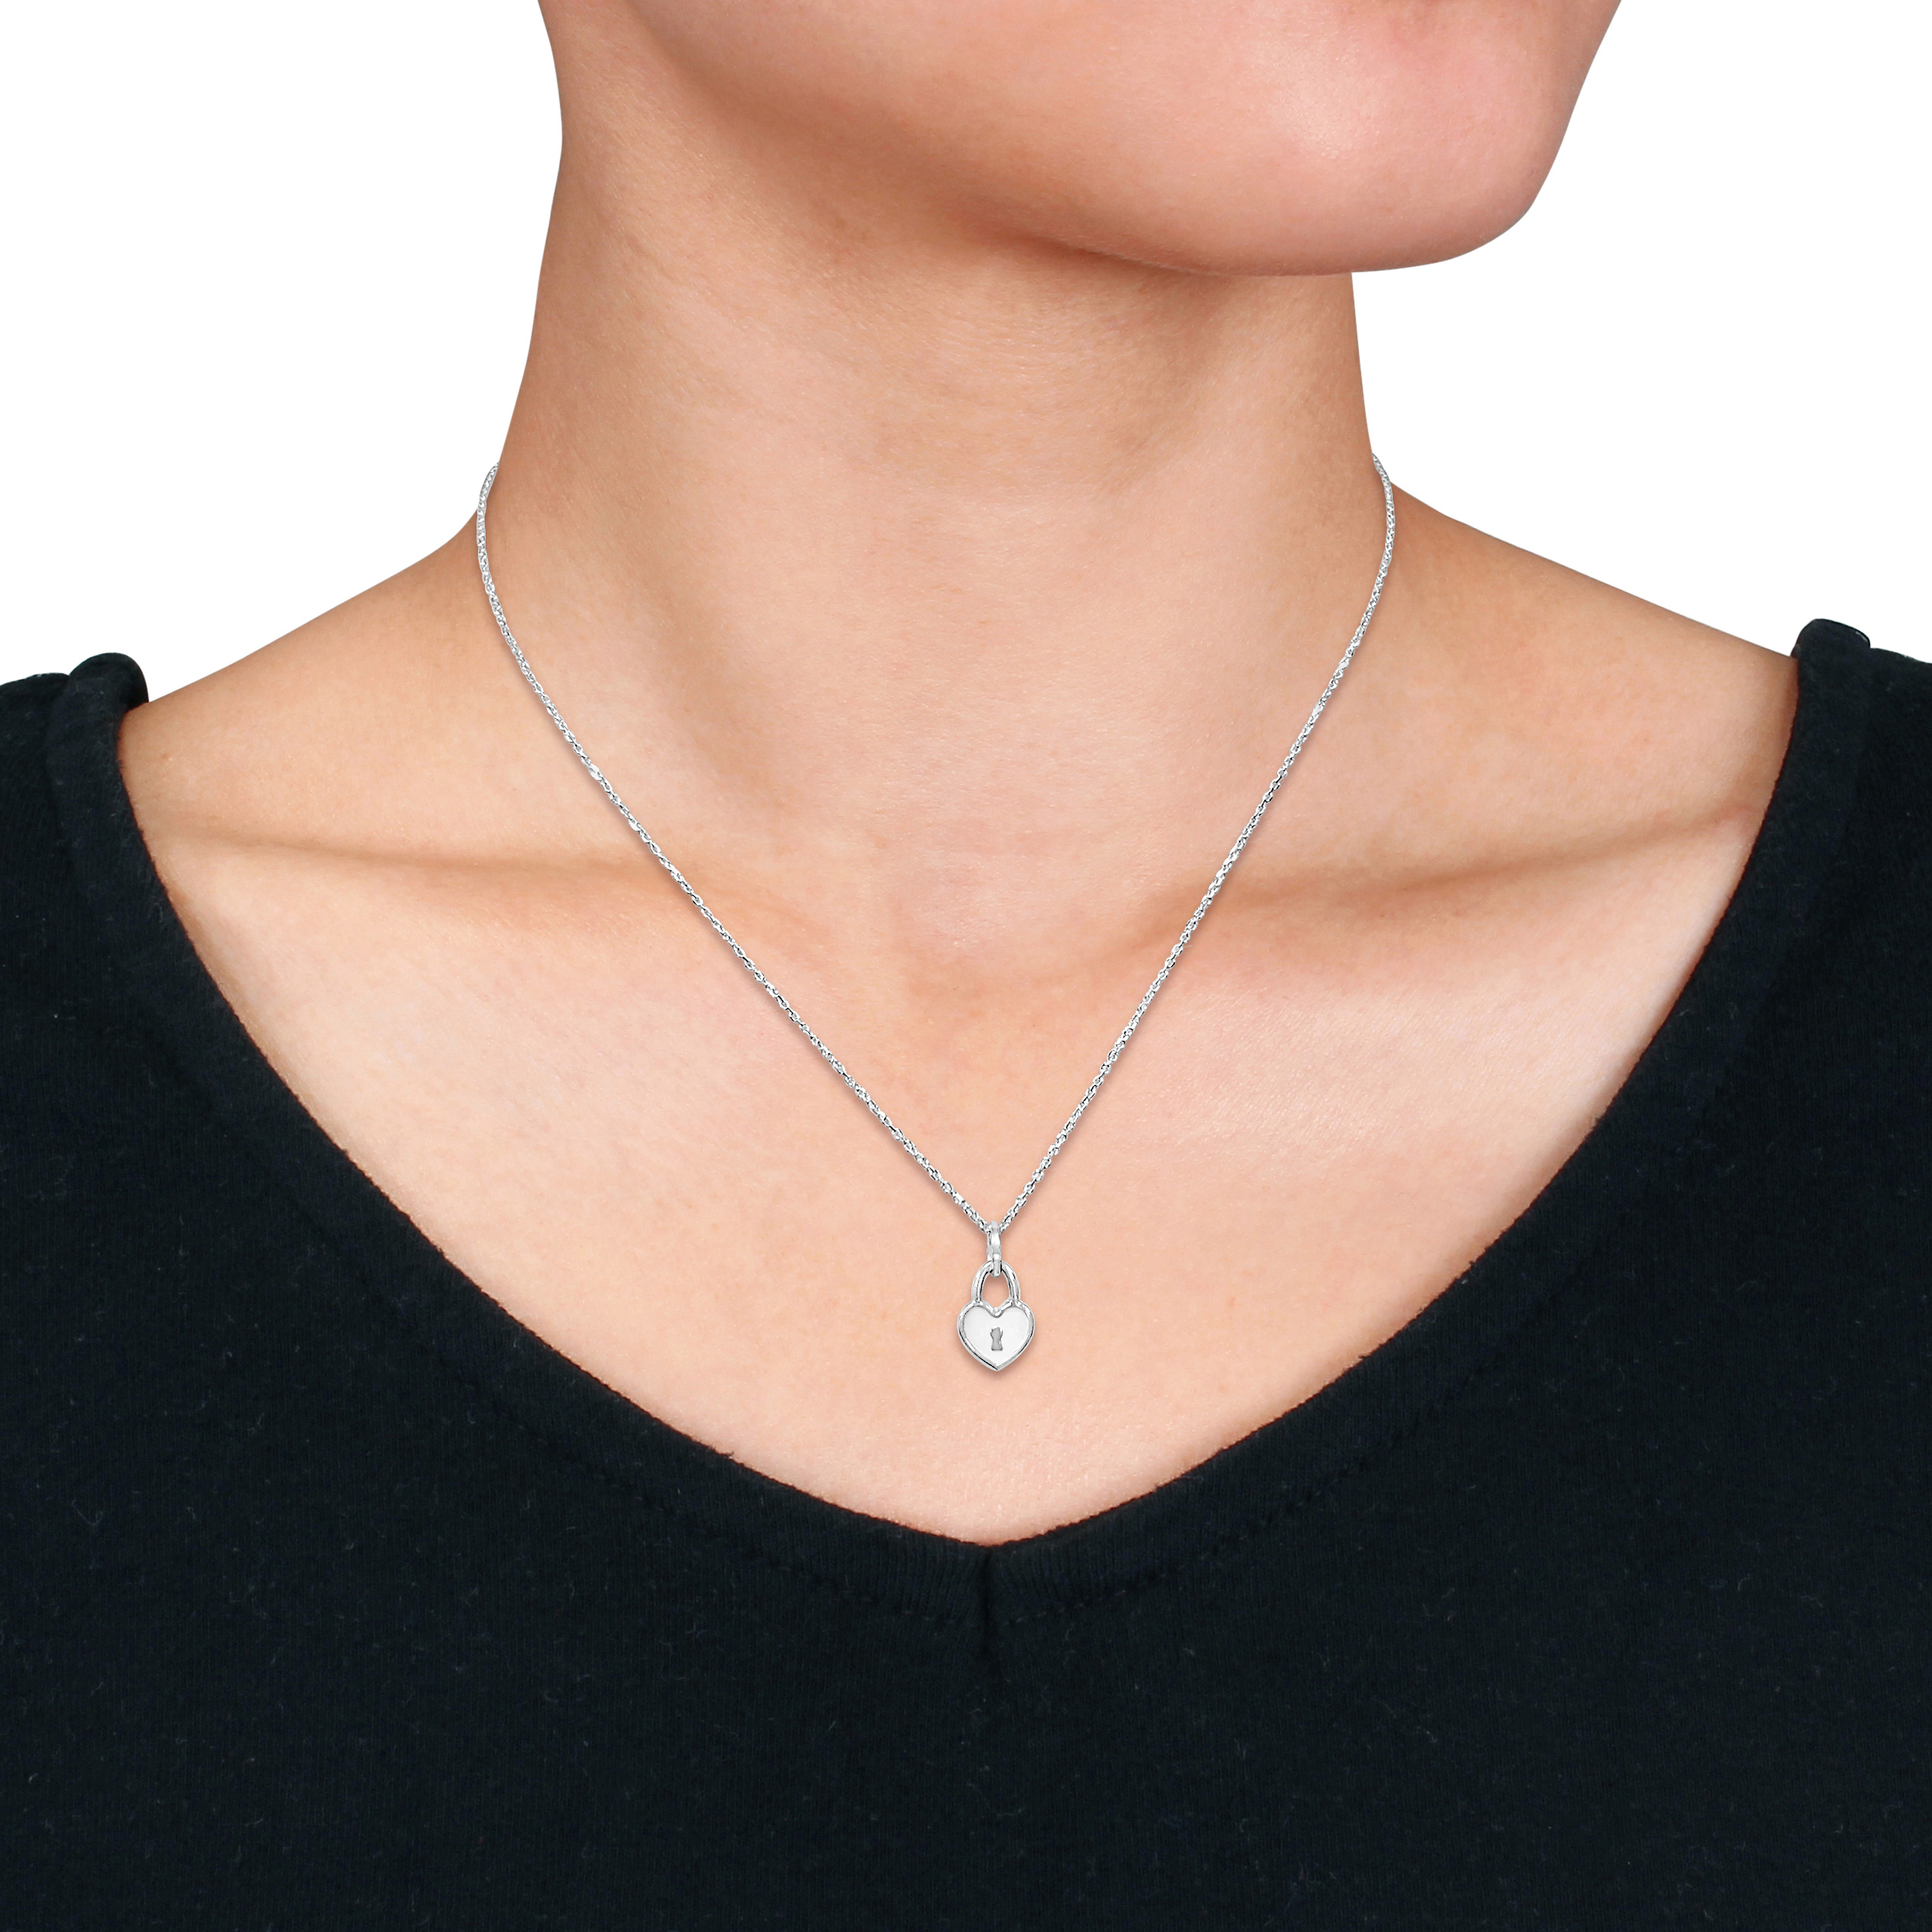 White Enamel Heart Lock Charm Necklace in Sterling Silver - 16+2 in.